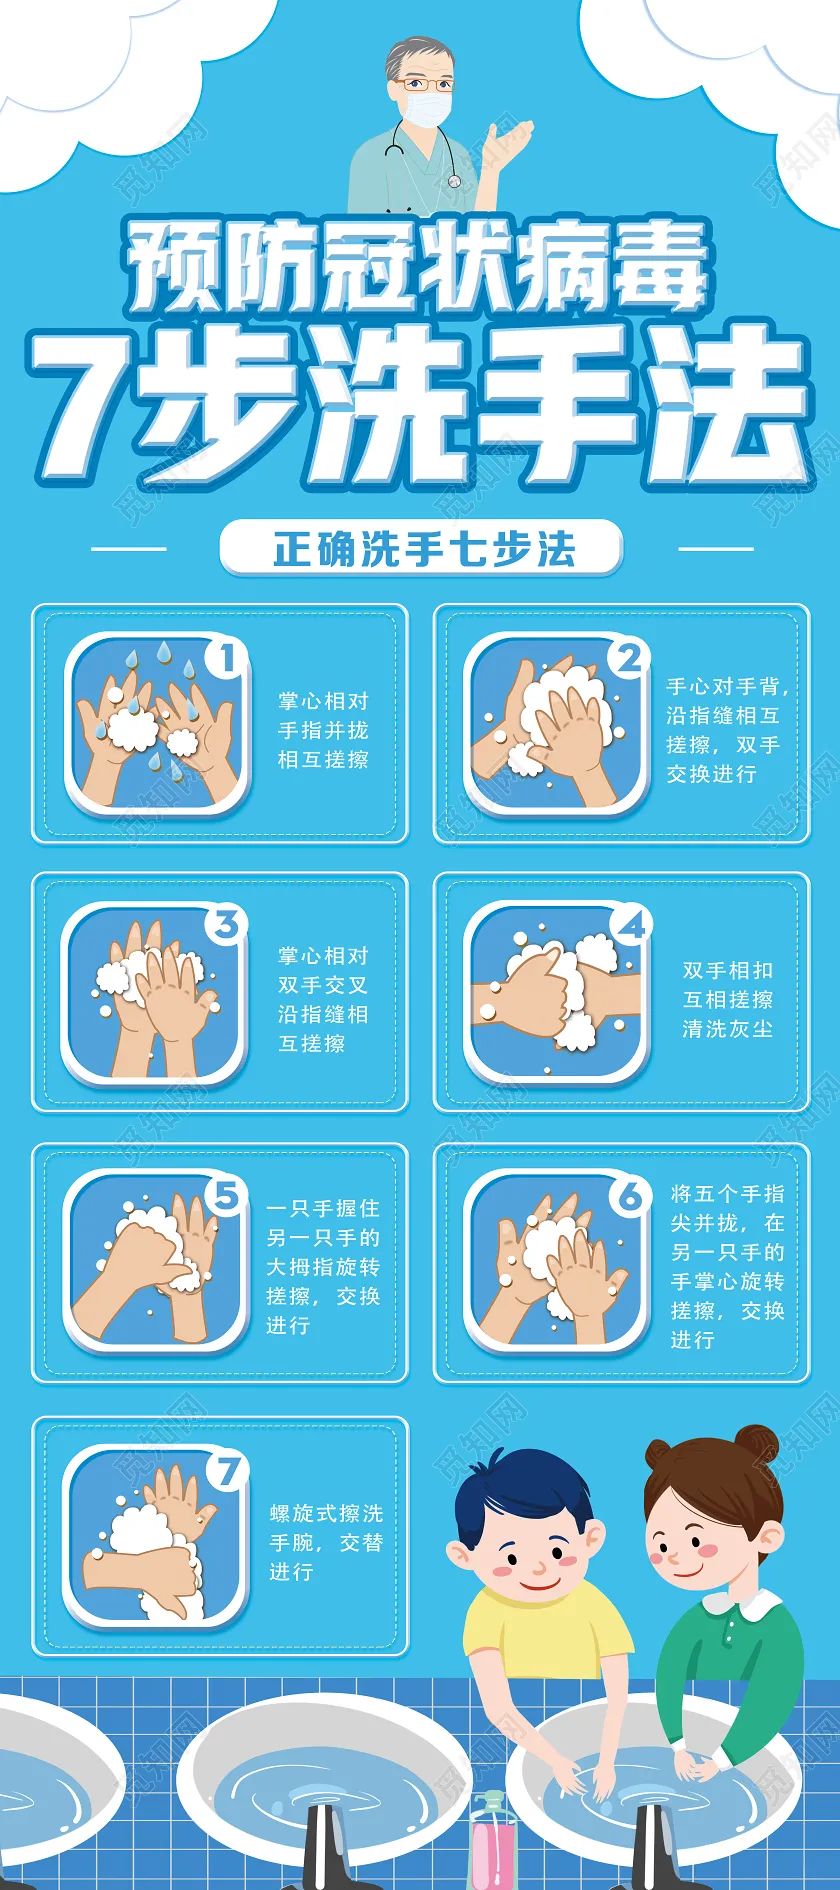 洗手七步法最新版图片